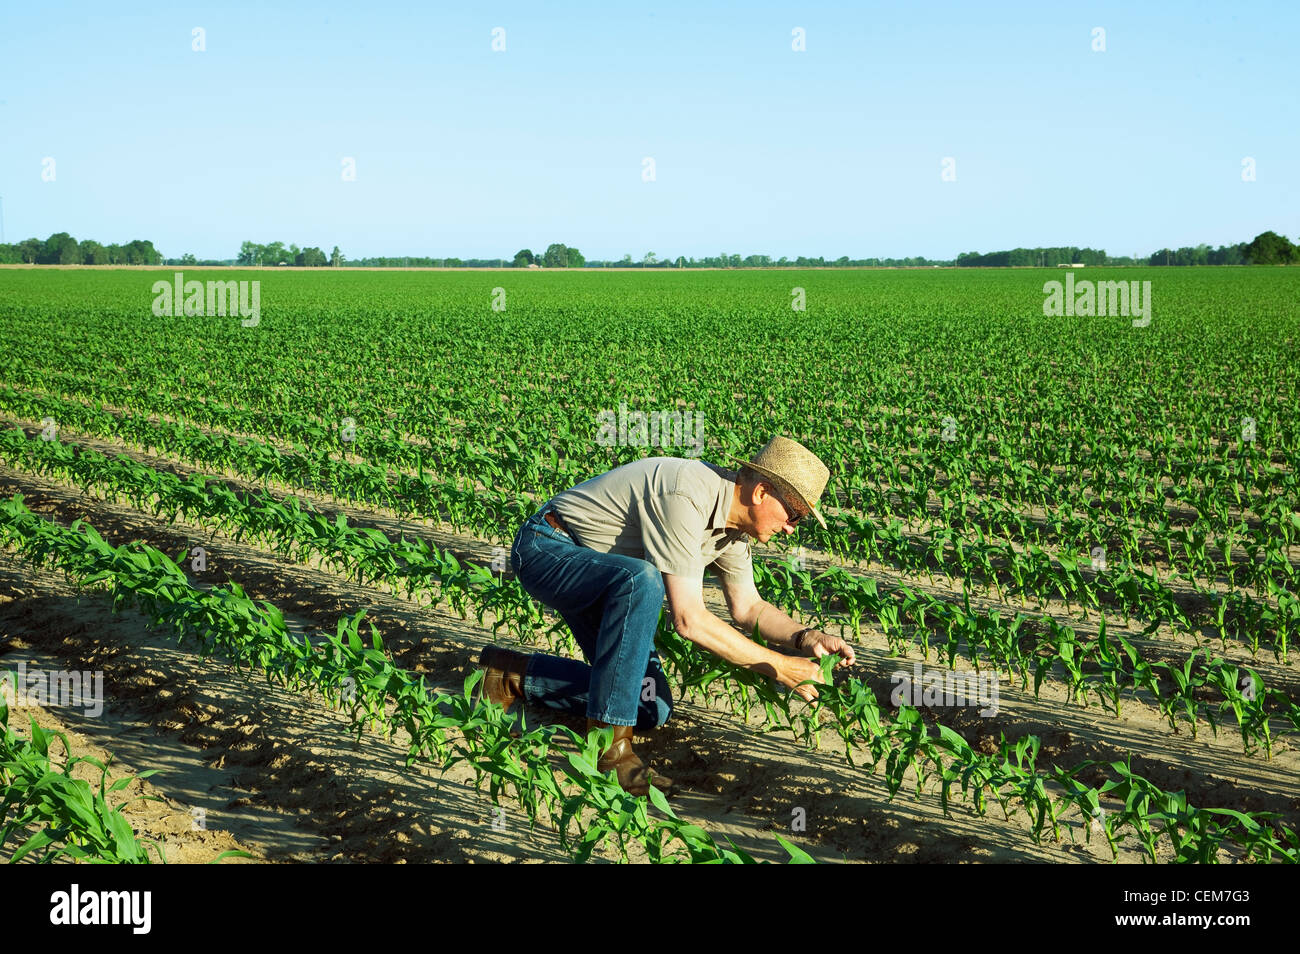 Agriculture - Un agriculteur (producteur) examine la croissance des jeunes plants de maïs-grain au stade 6 feuilles / près de l'Angleterre, Arkansas, USA. Banque D'Images